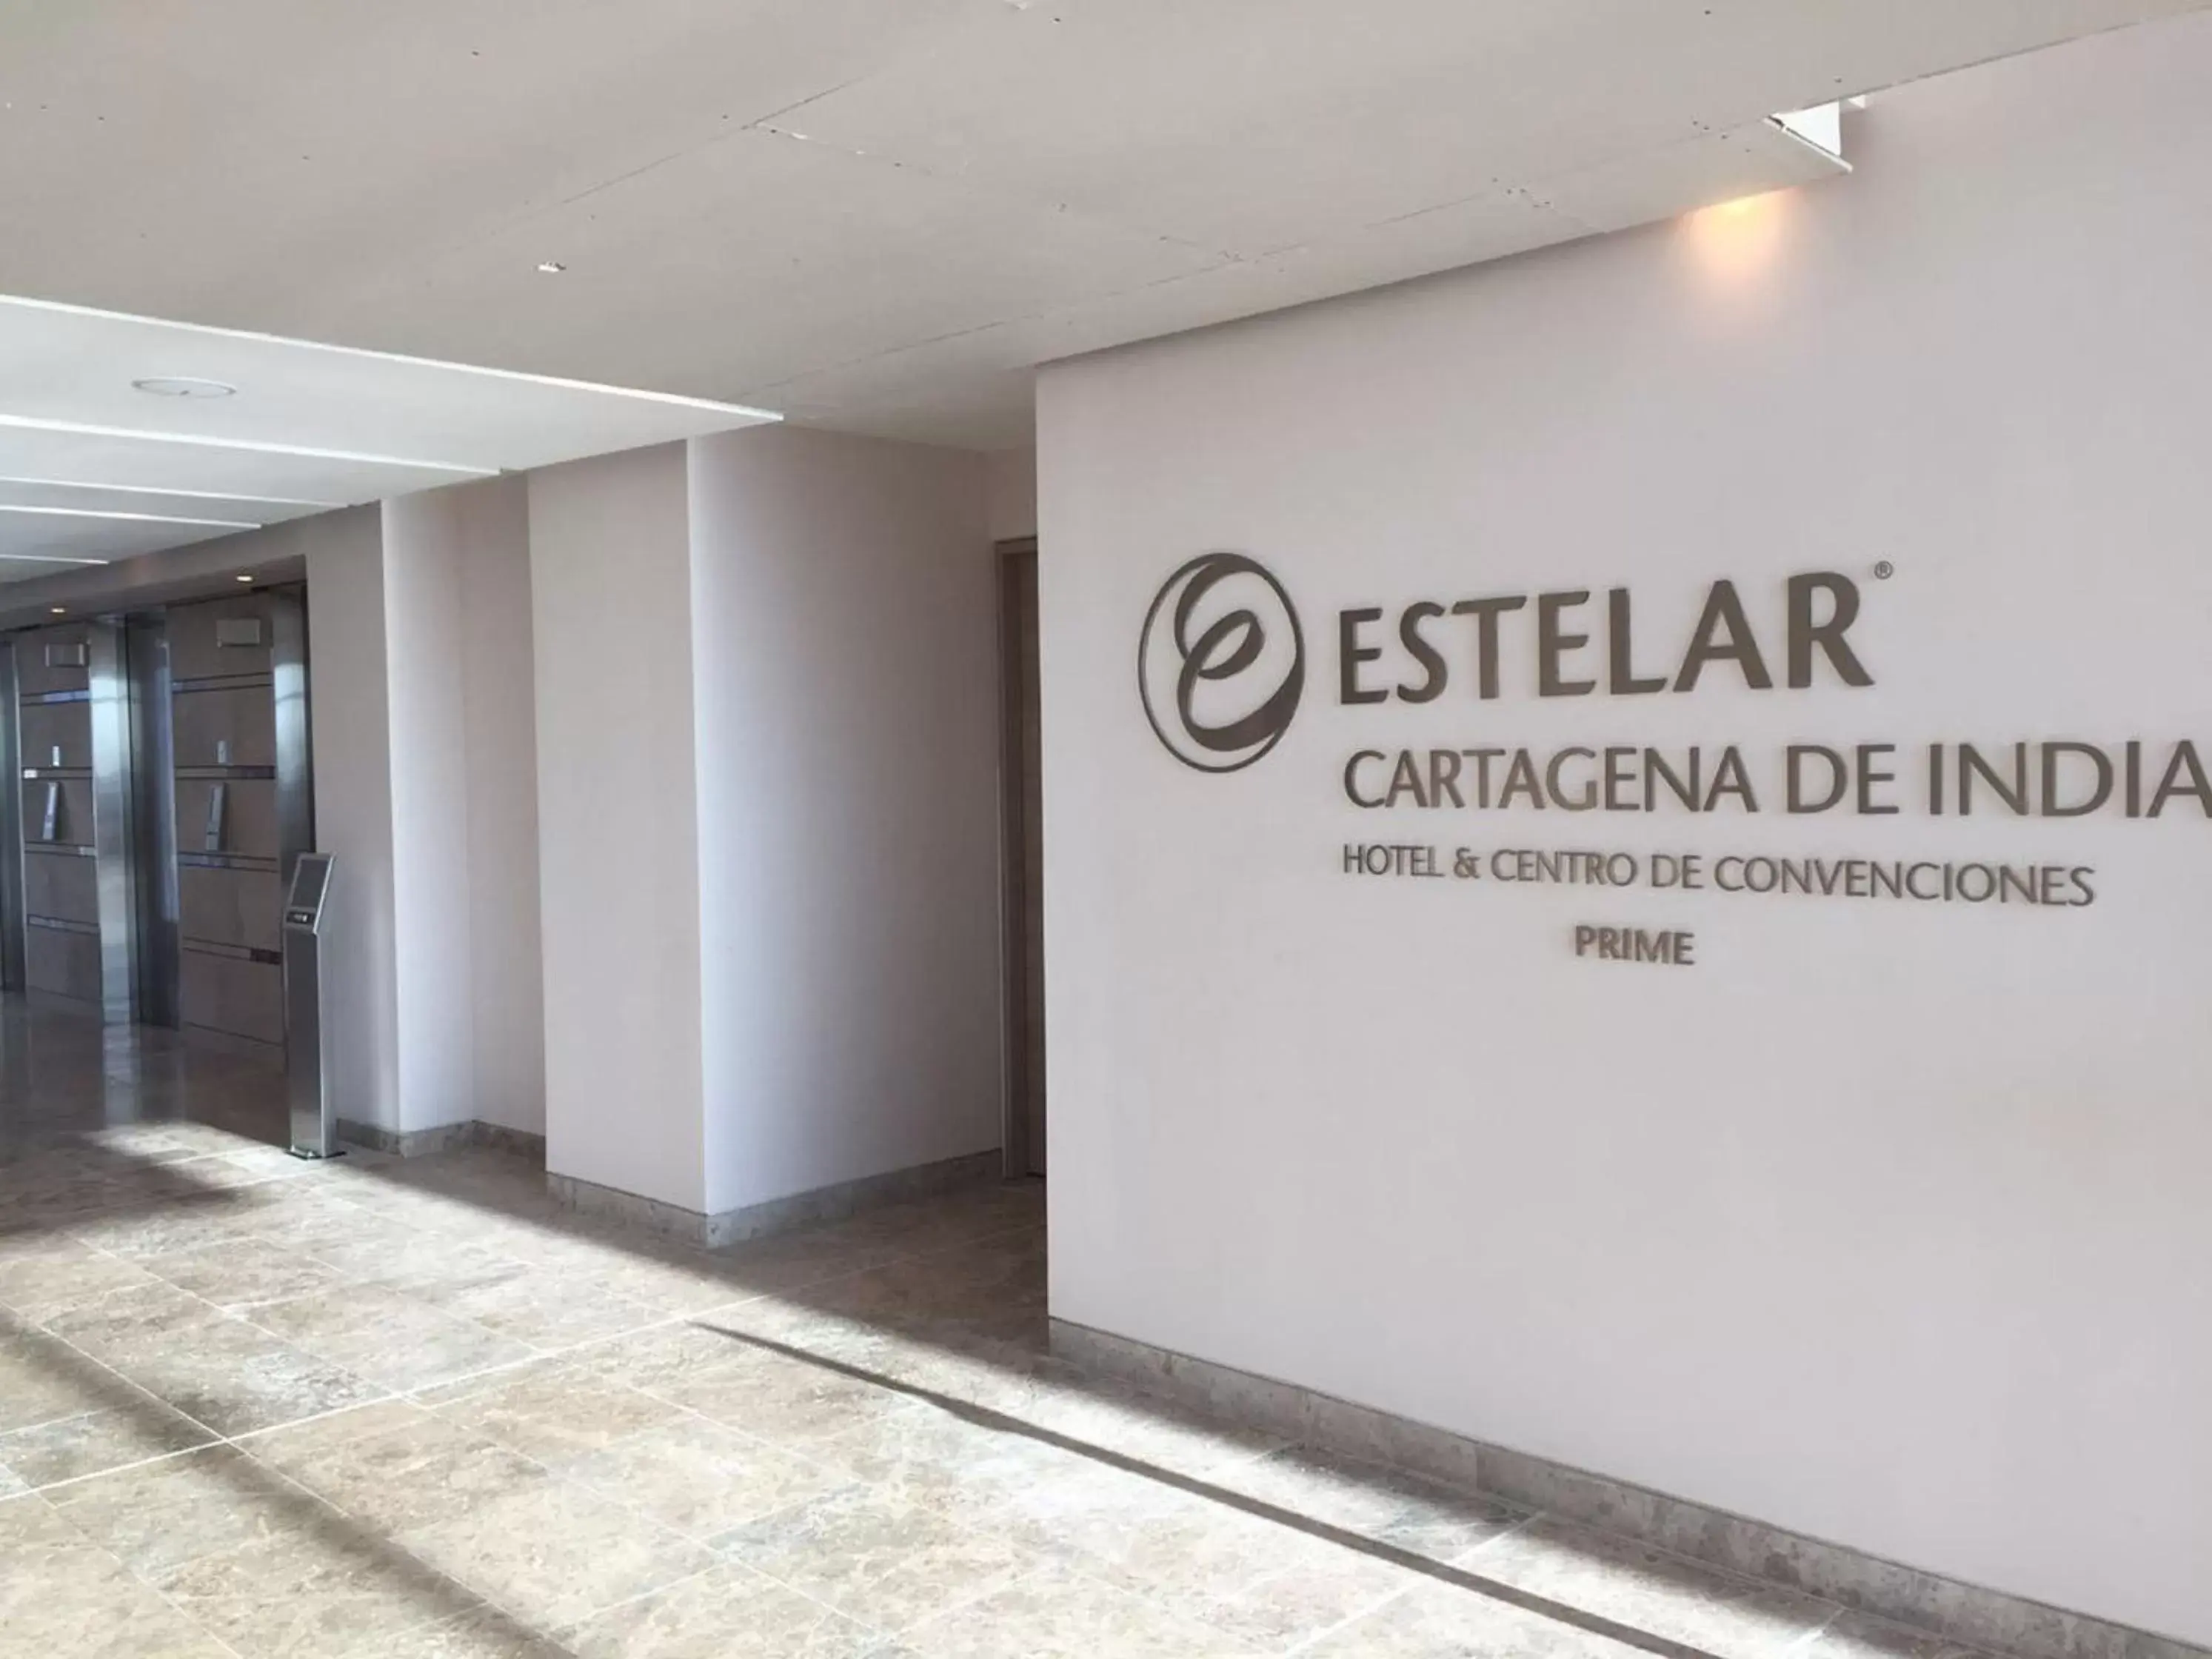 Area and facilities in Estelar Cartagena de Indias Hotel y Centro de Convenciones